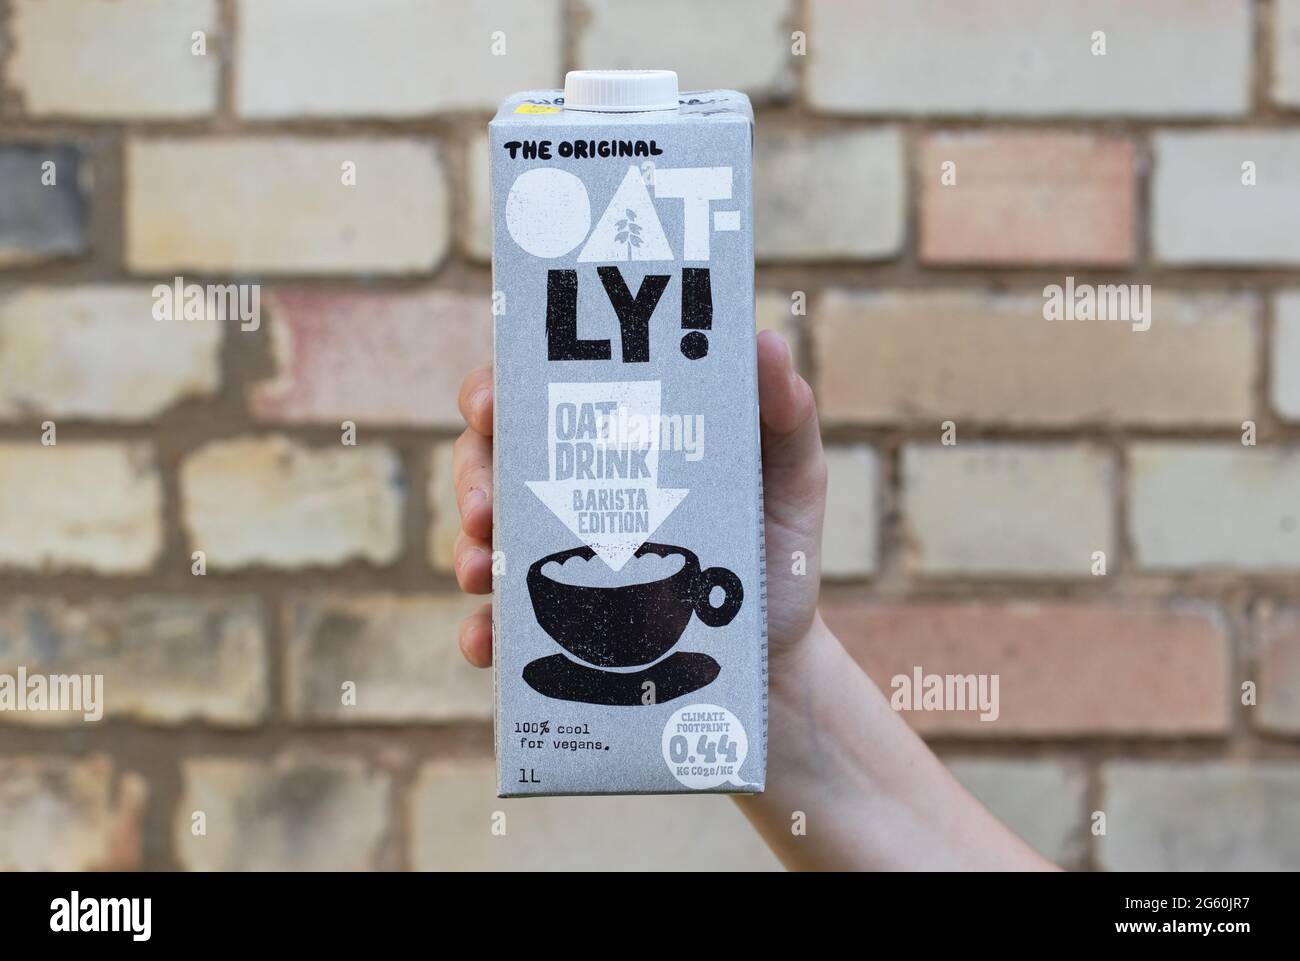 Londres / Royaume-Uni - 24 août 2019 - main tenant un carton de lait Oatly. Oatly est une alternative au lait végétalien sans lait. Banque D'Images